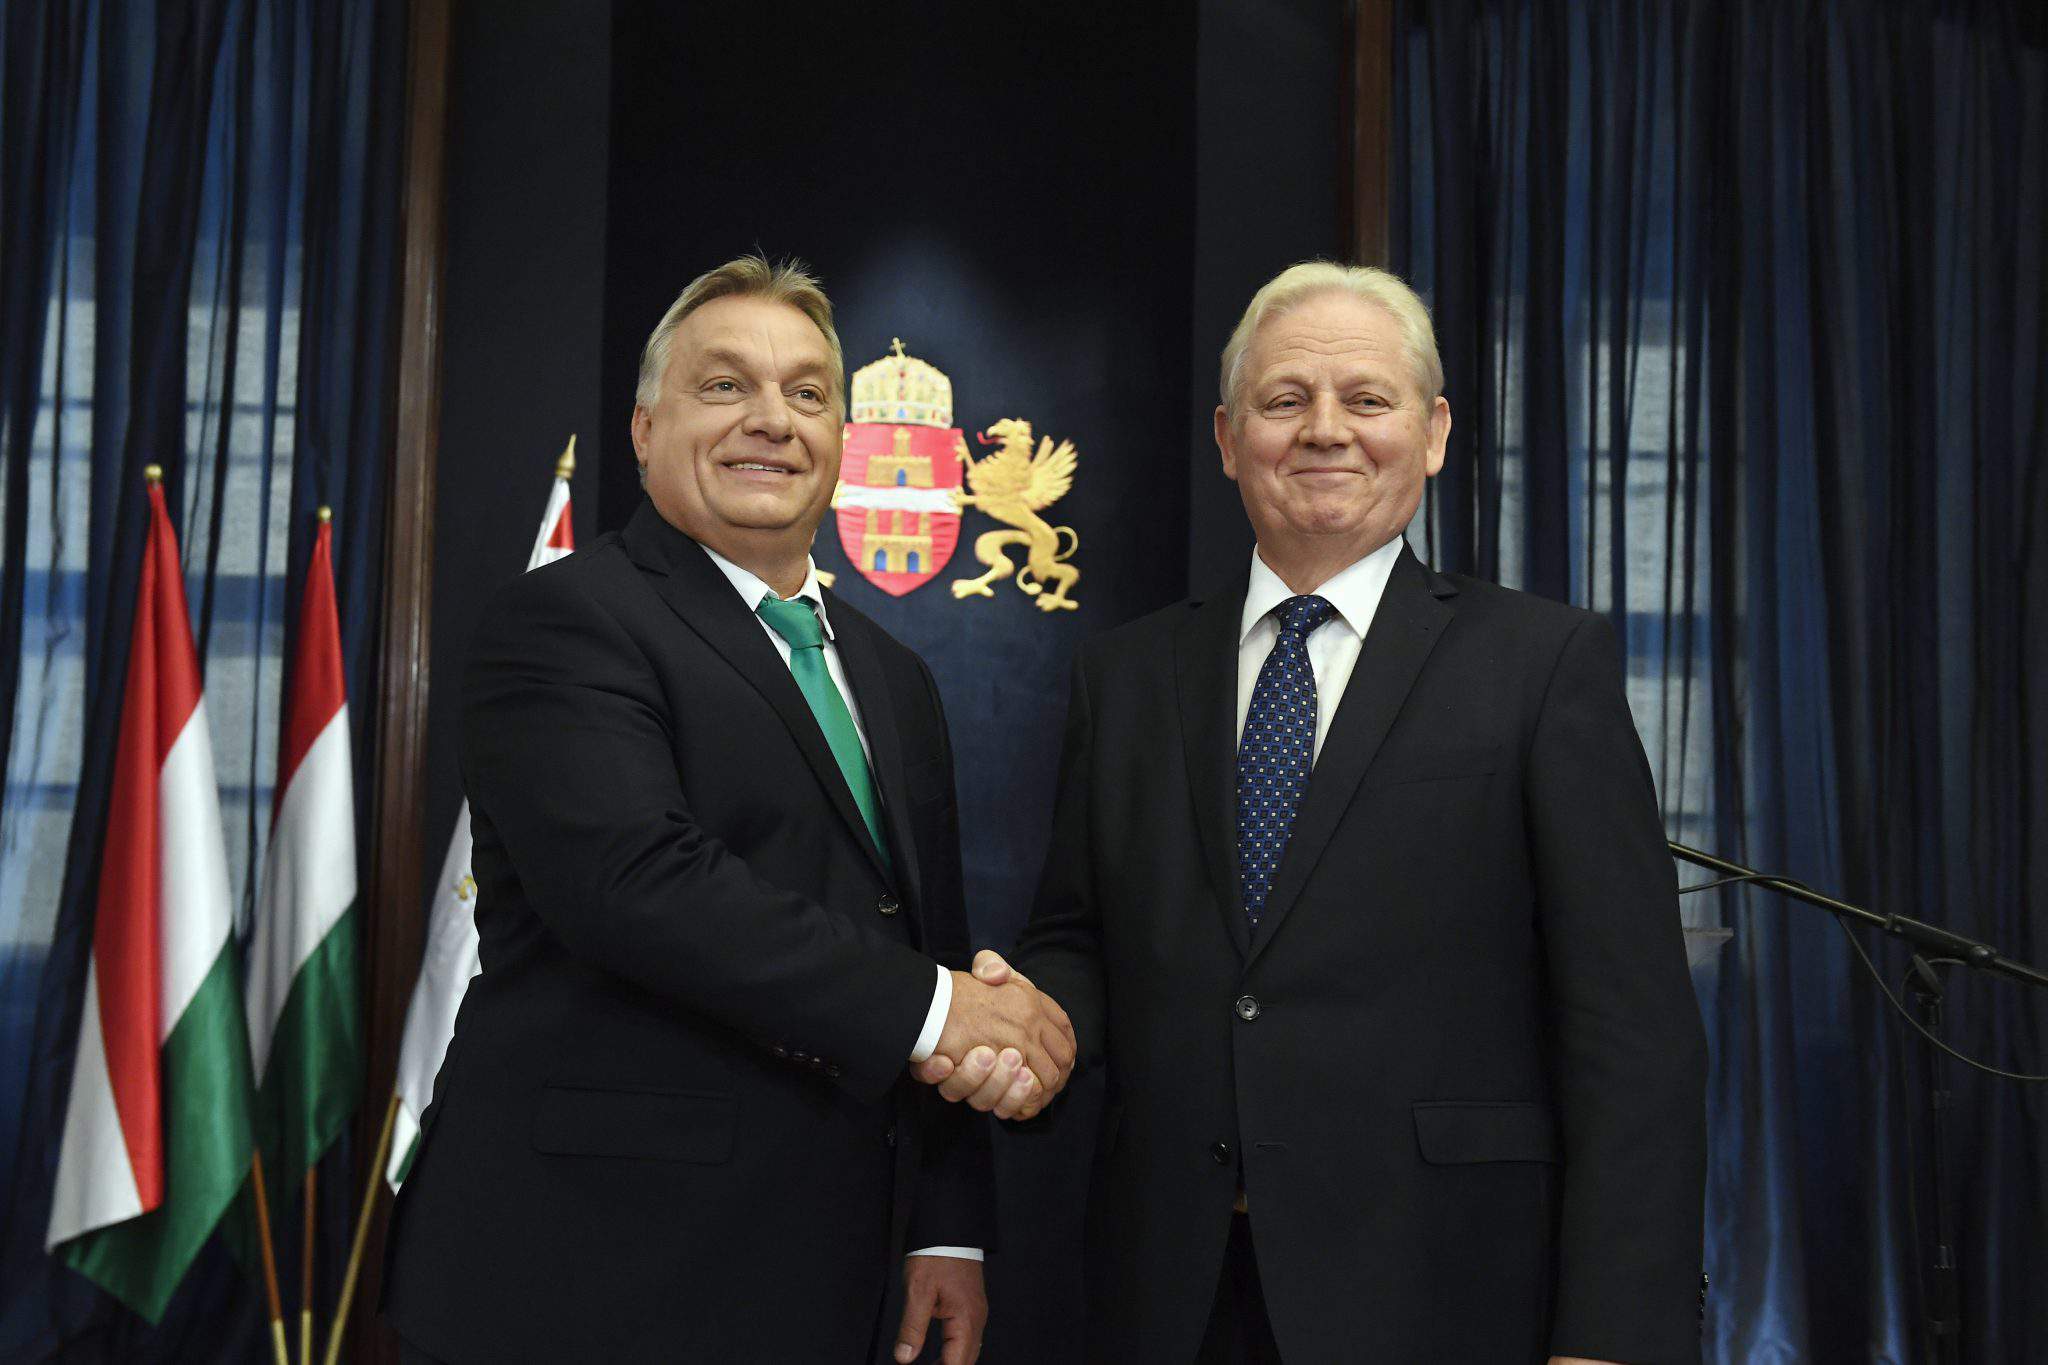 sindaco tarlós PM orbán